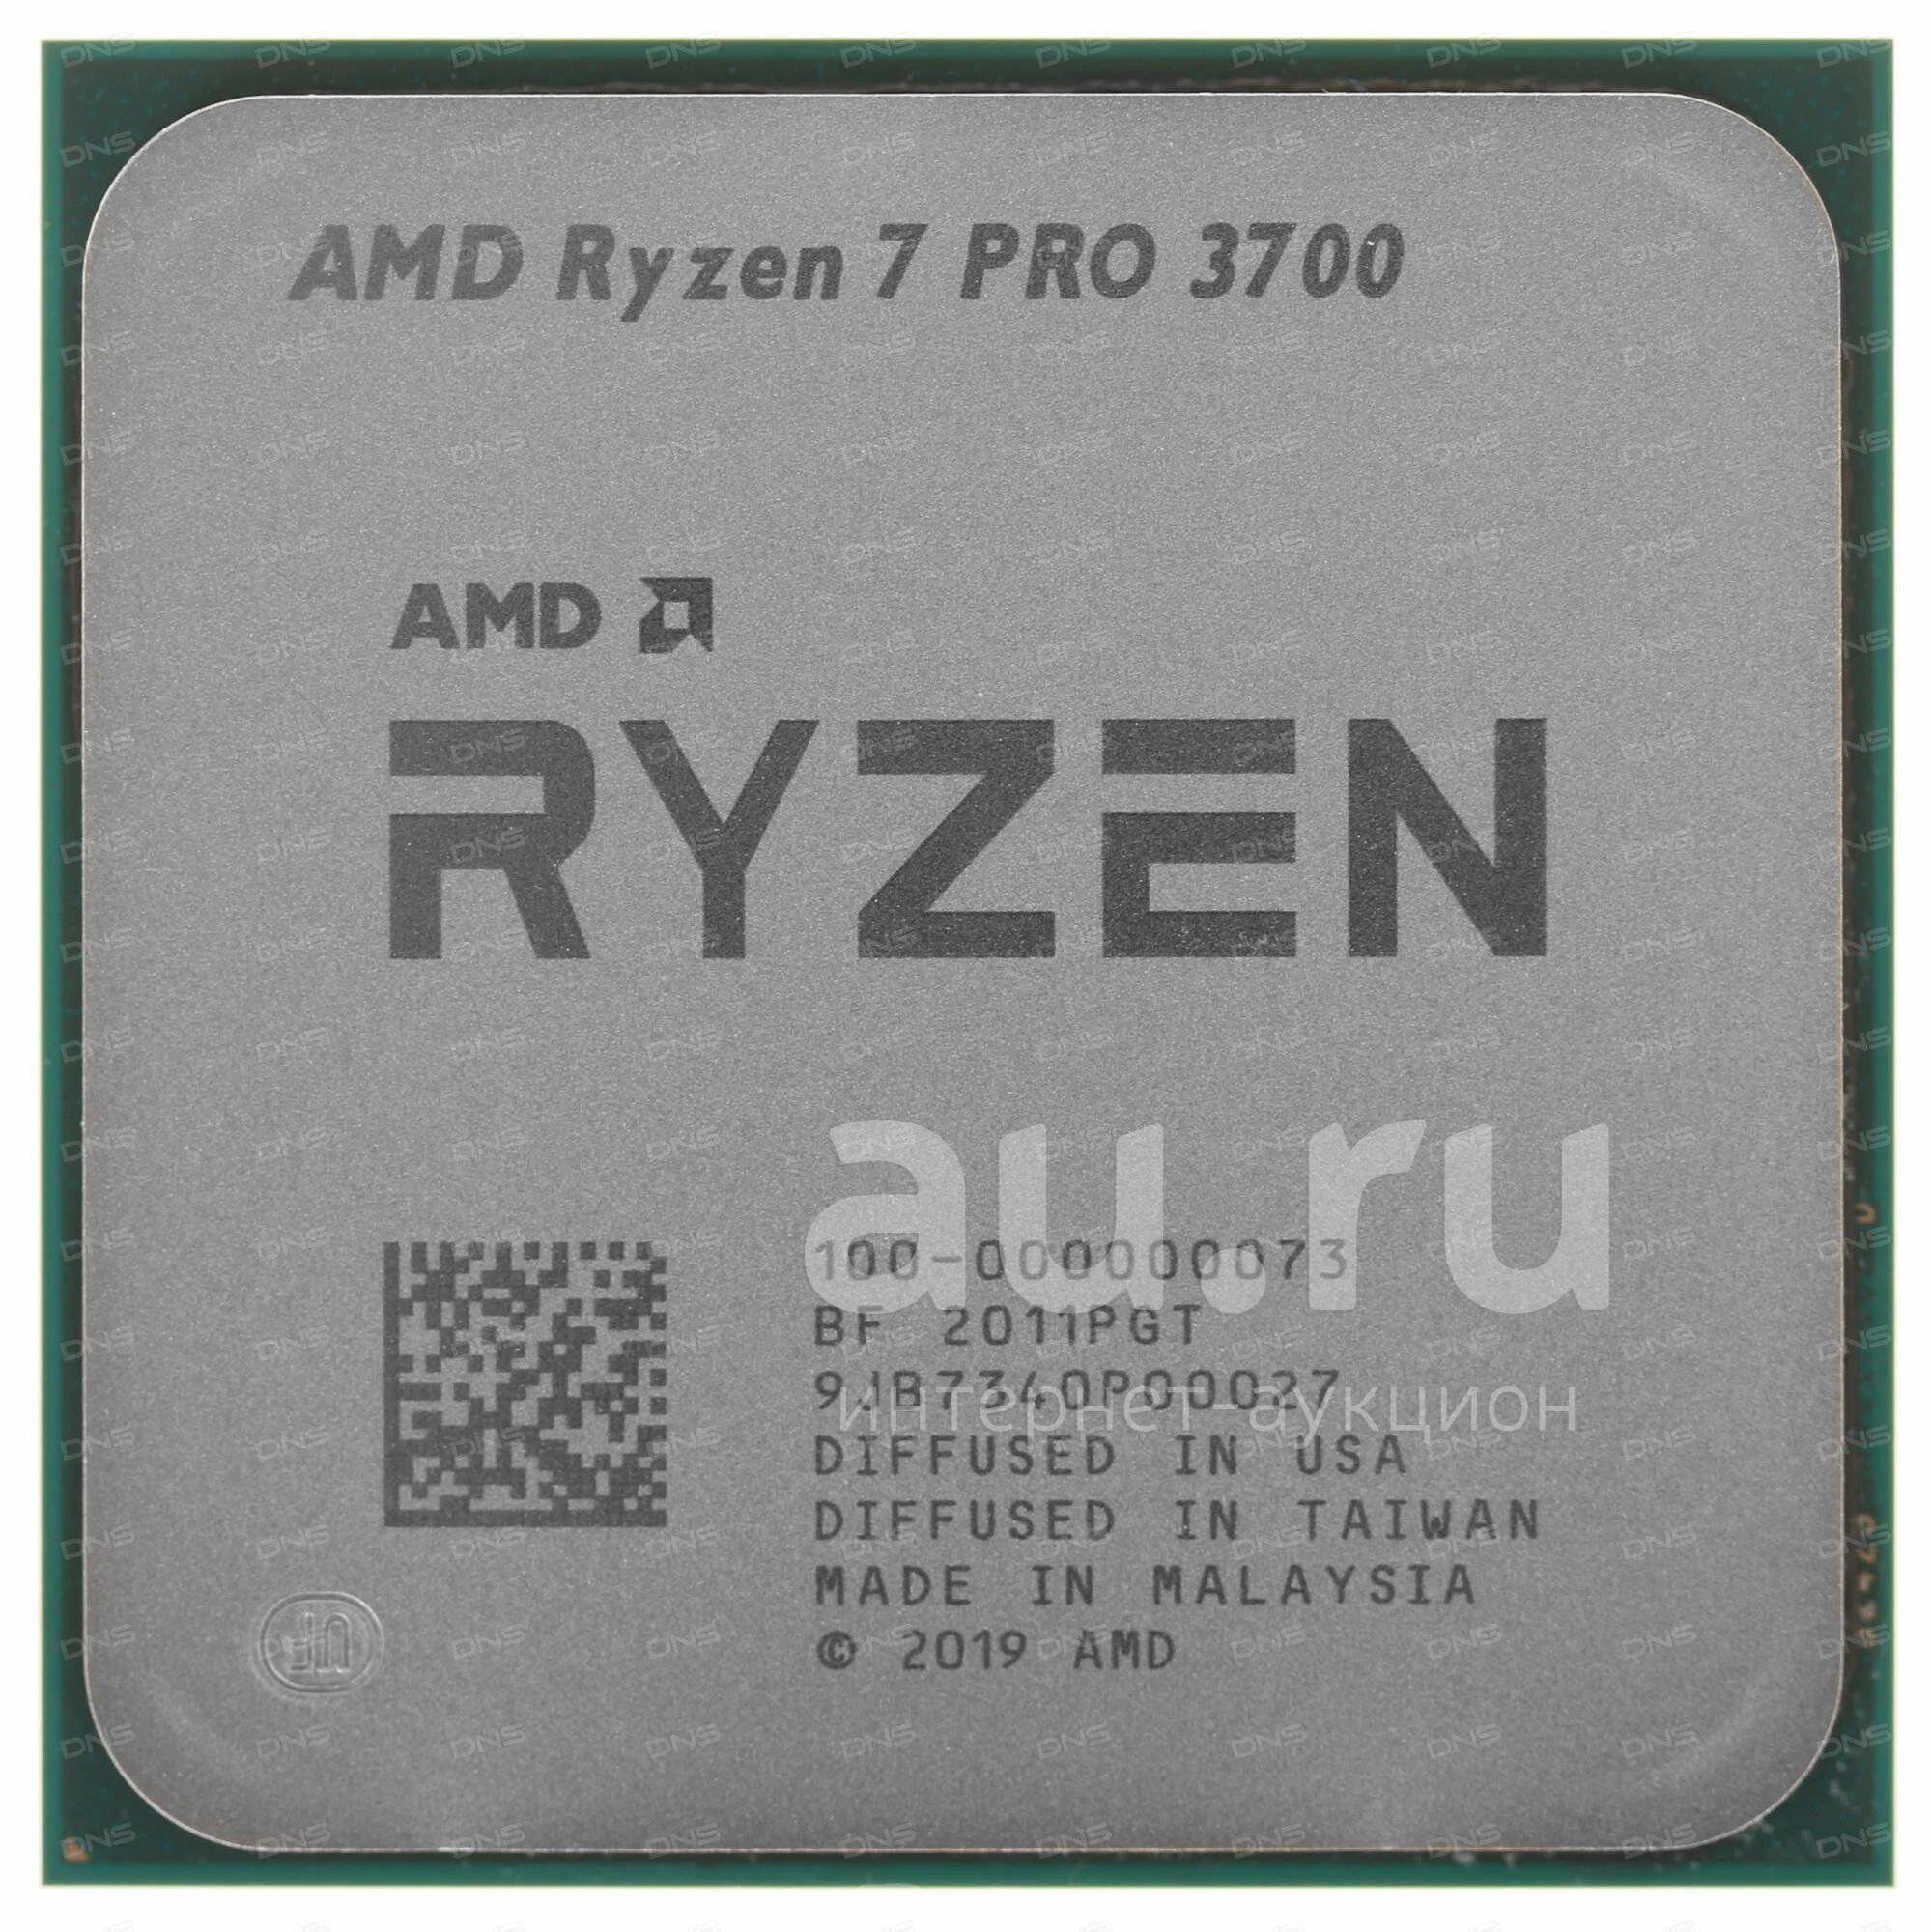 Ryzen 7 pro 3700. AMD Ryzen 7 Pro 3700. 3700 Pro. AMD Ryzen 7 Pro 3700 (OEM).